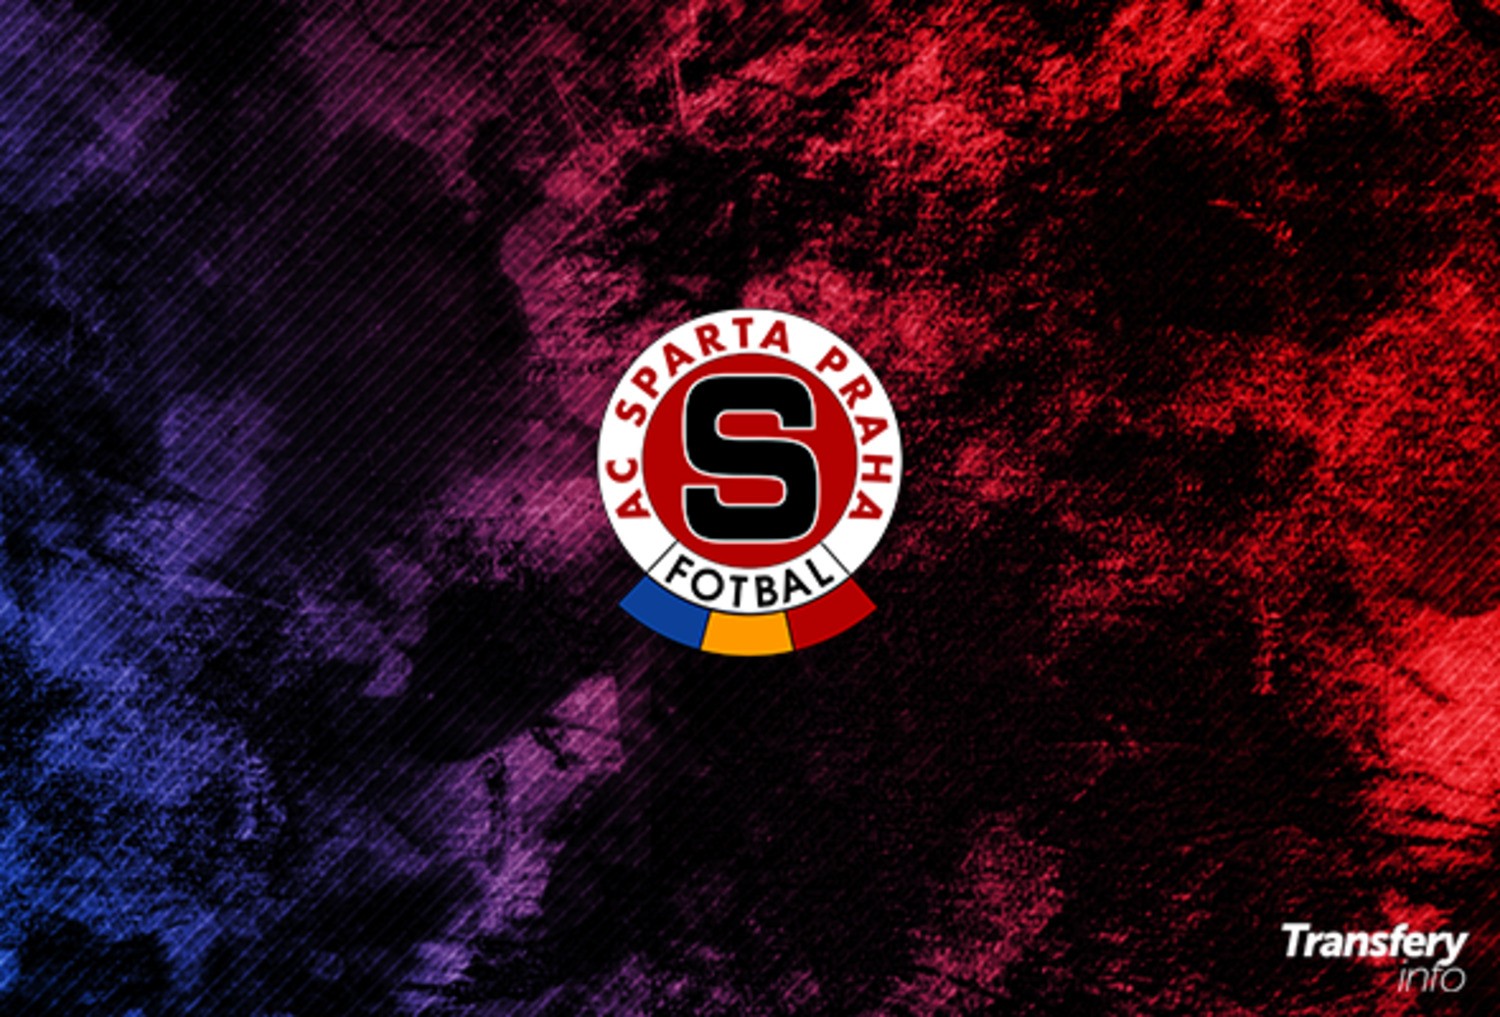 OFICJALNIE: Nowy herb Sparty Praga od sezonu 2021/2022 [FOTO]